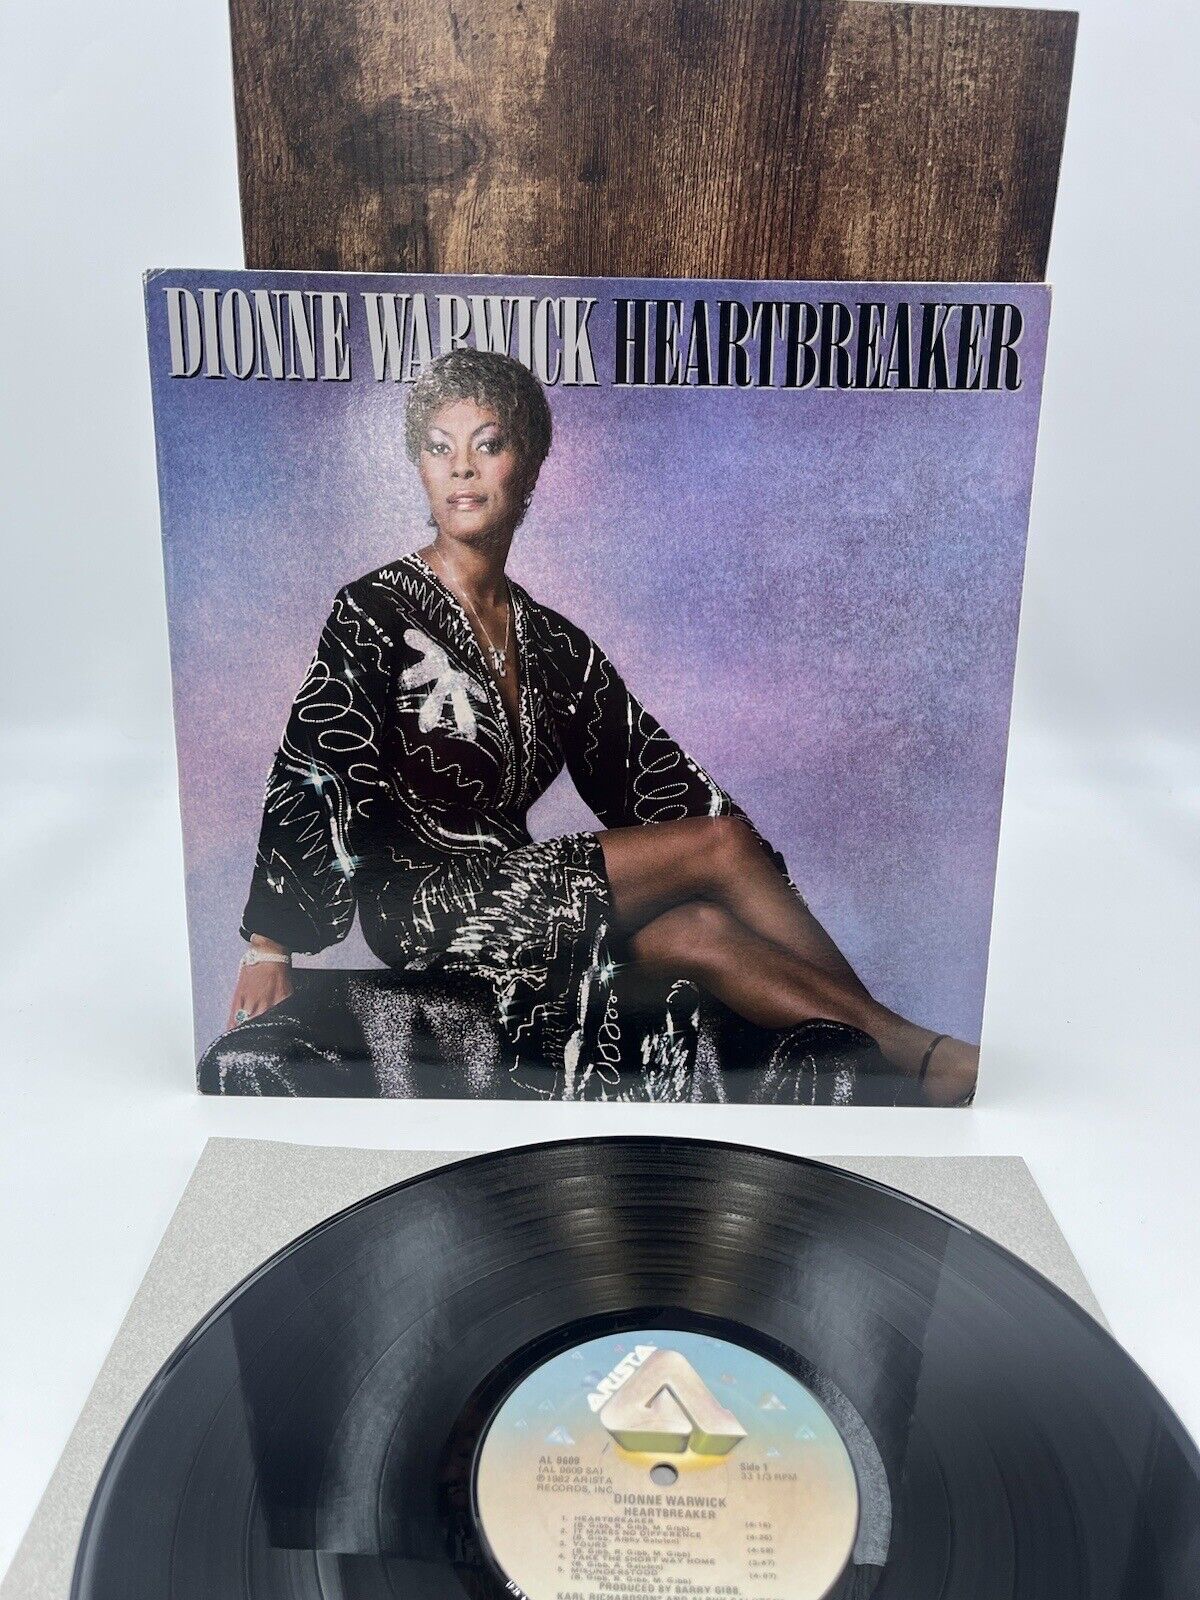 Dionne Warwick/Heart Breaker Vinyl Record